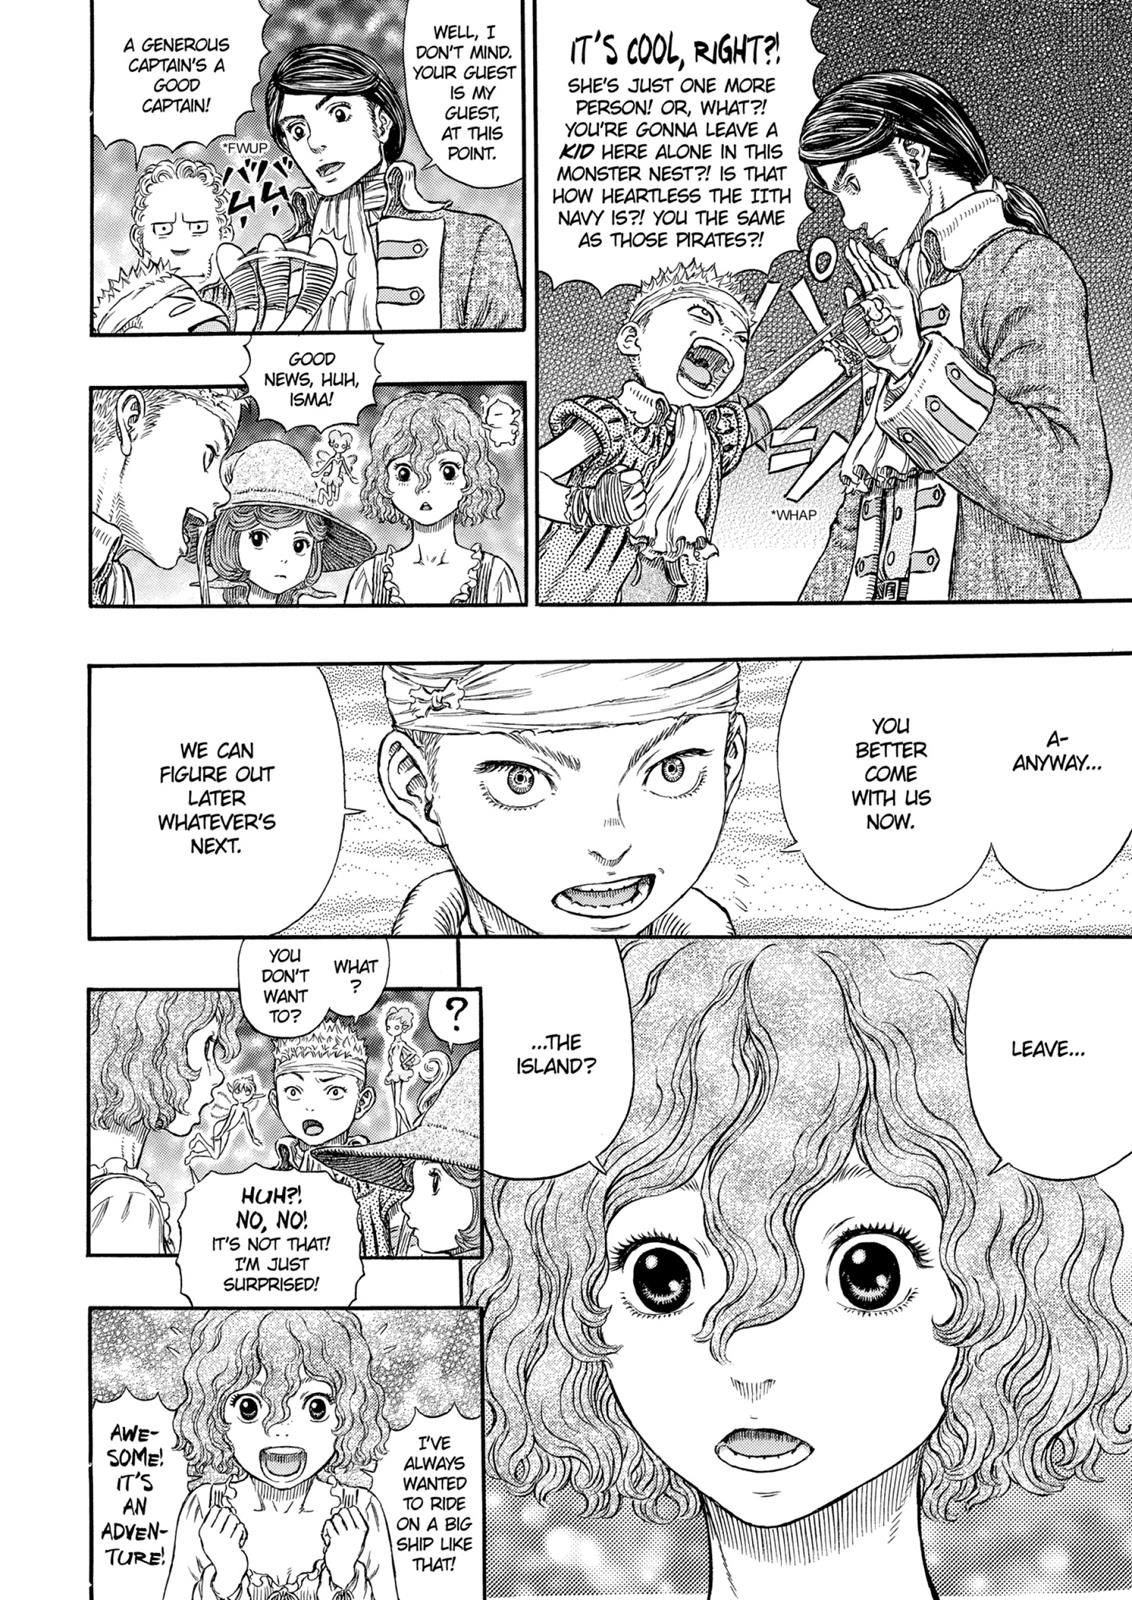 Berserk Manga Chapter 317 image 15